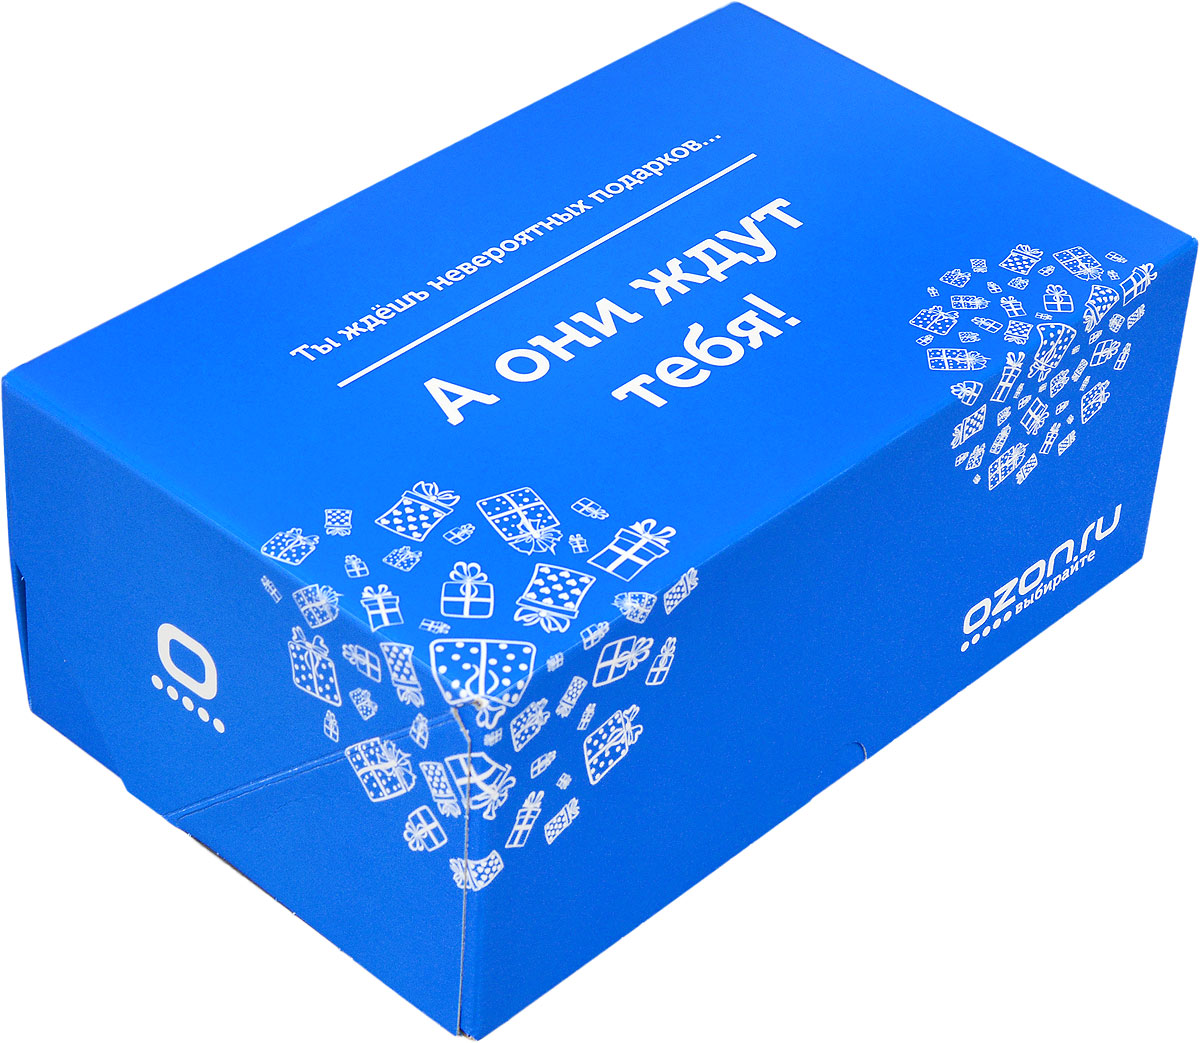 фото Подарочная коробка OZON.ru. Средний размер, "Ты ждешь невероятных подарков, а они ждут тебя!". 23.4 х 14.3 х 9.7 см